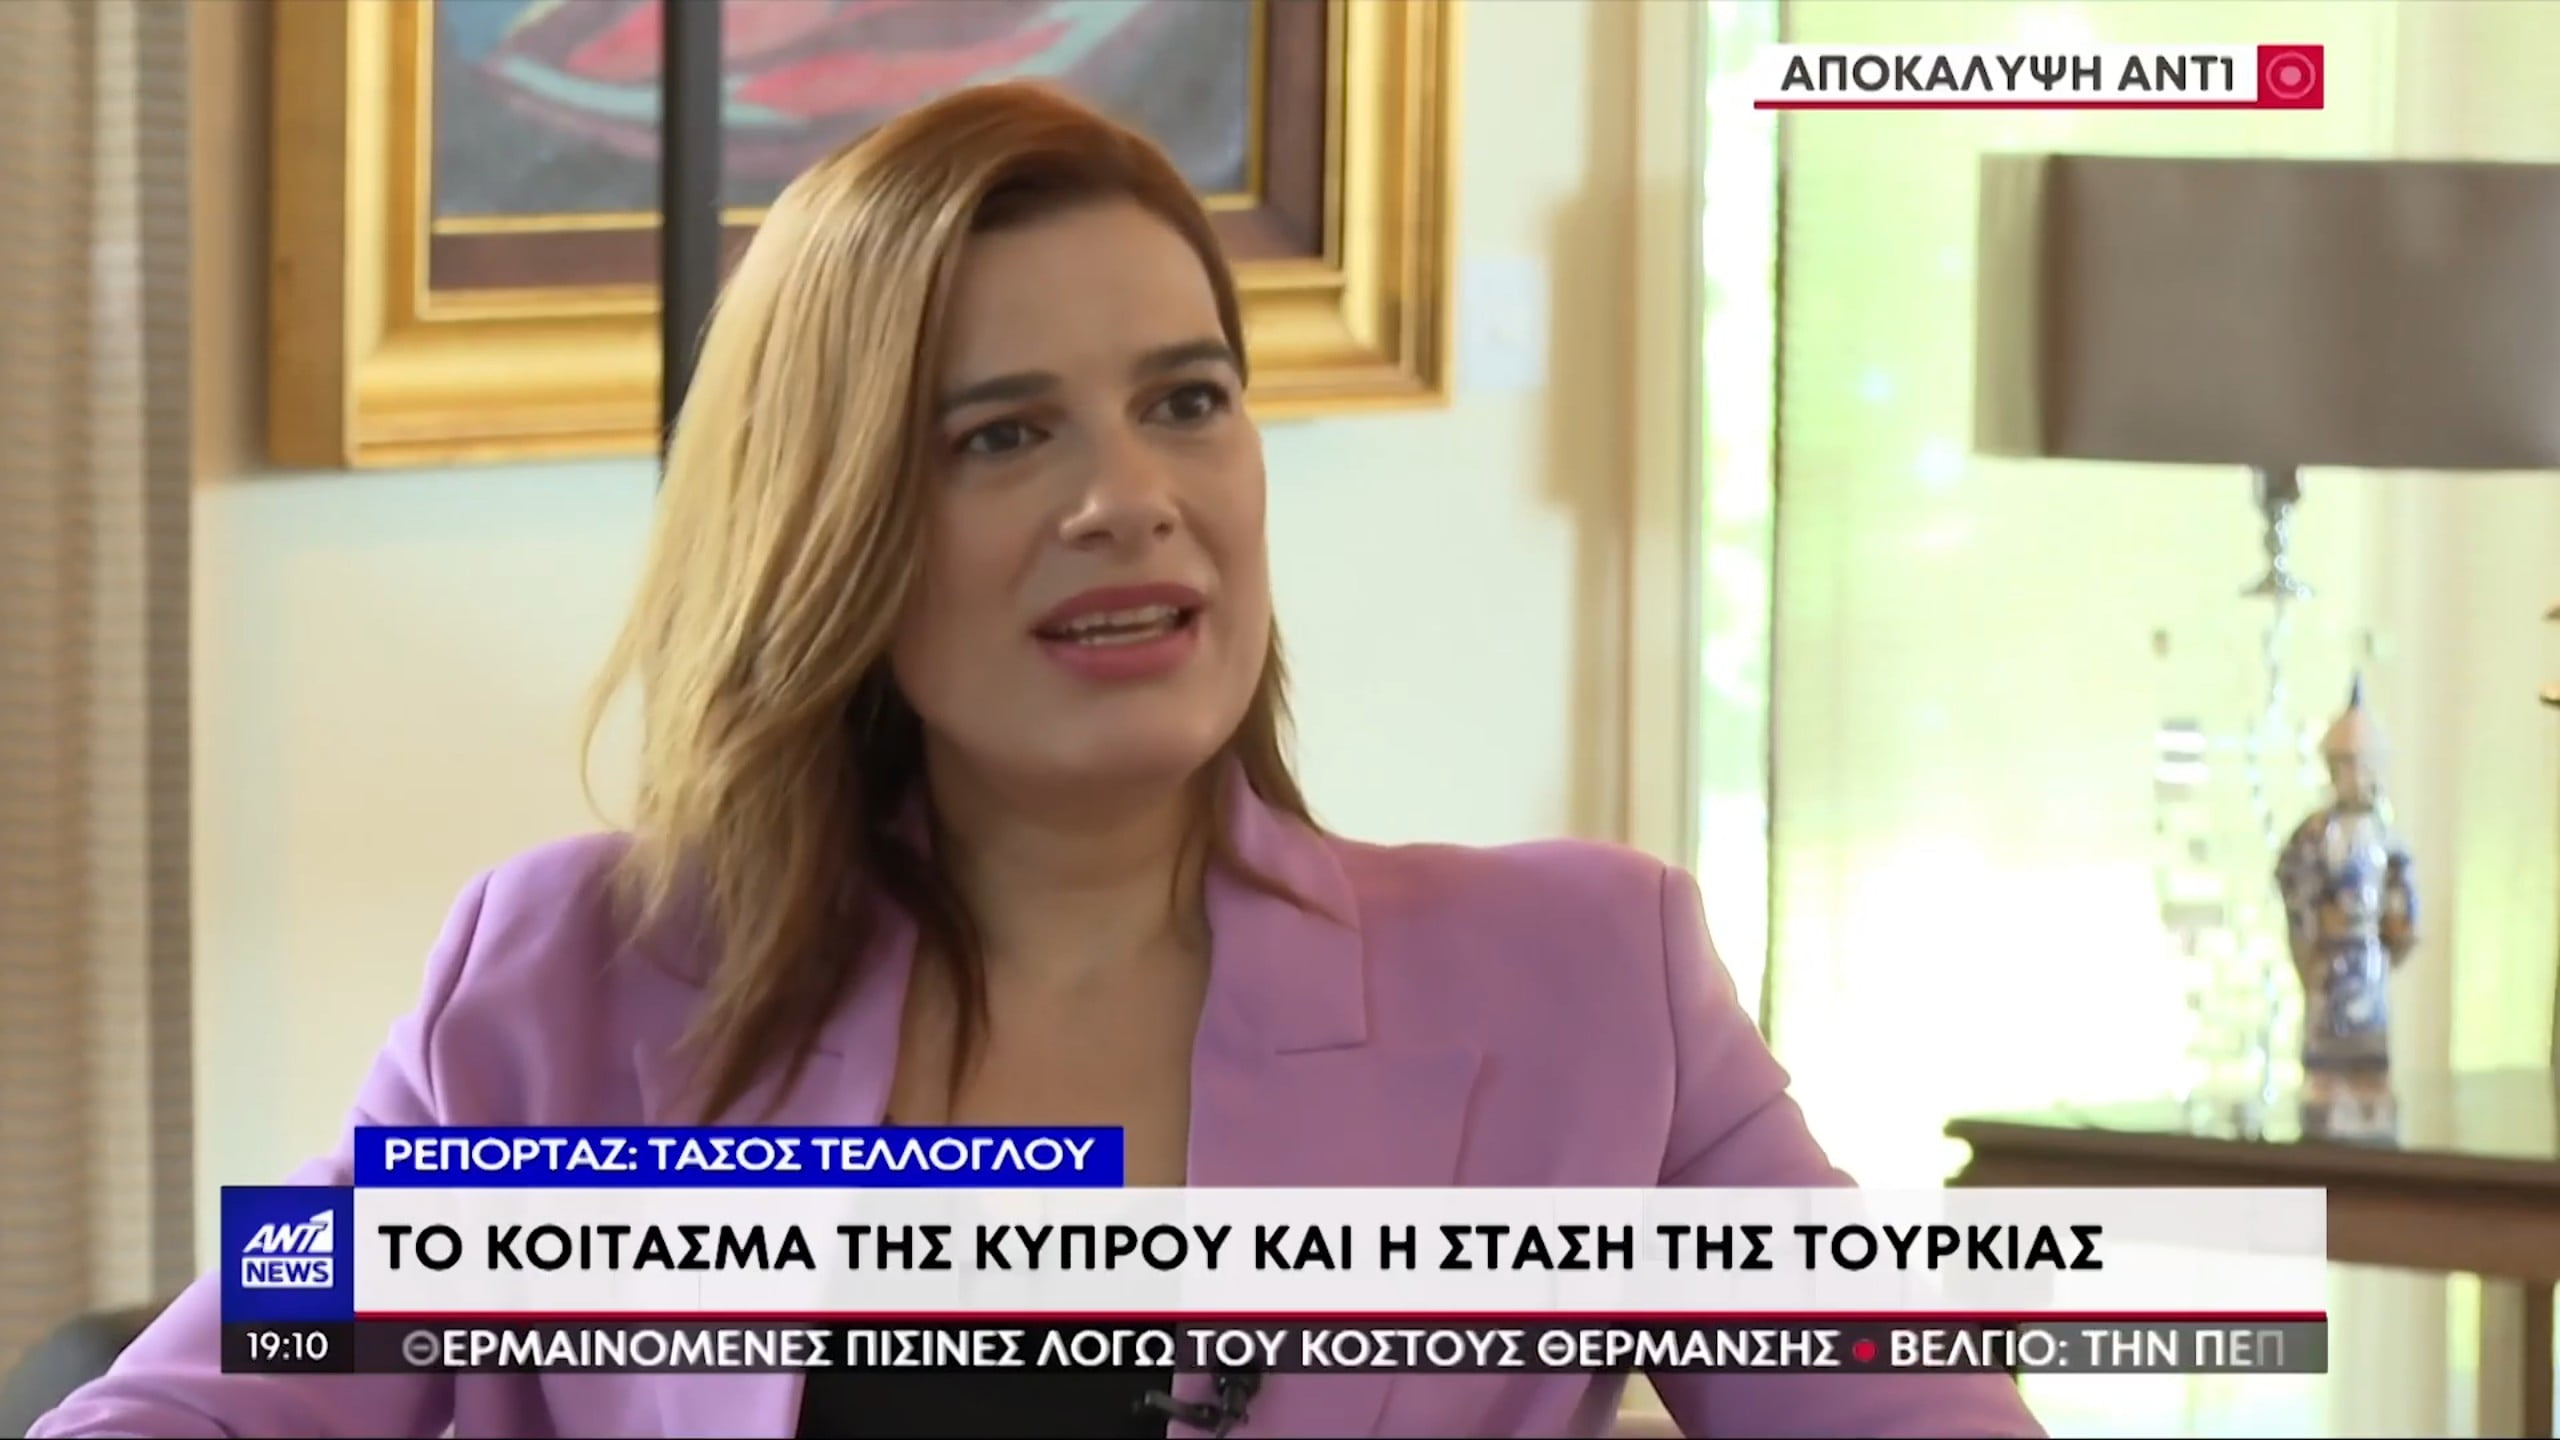 Υπουργός Ενέργειας Κύπρου Νατάσα Πηλείδου: Ελπίζω η ανακάλυψη του κοιτάσματος να γίνει καταλύτης για το Κυπριακό